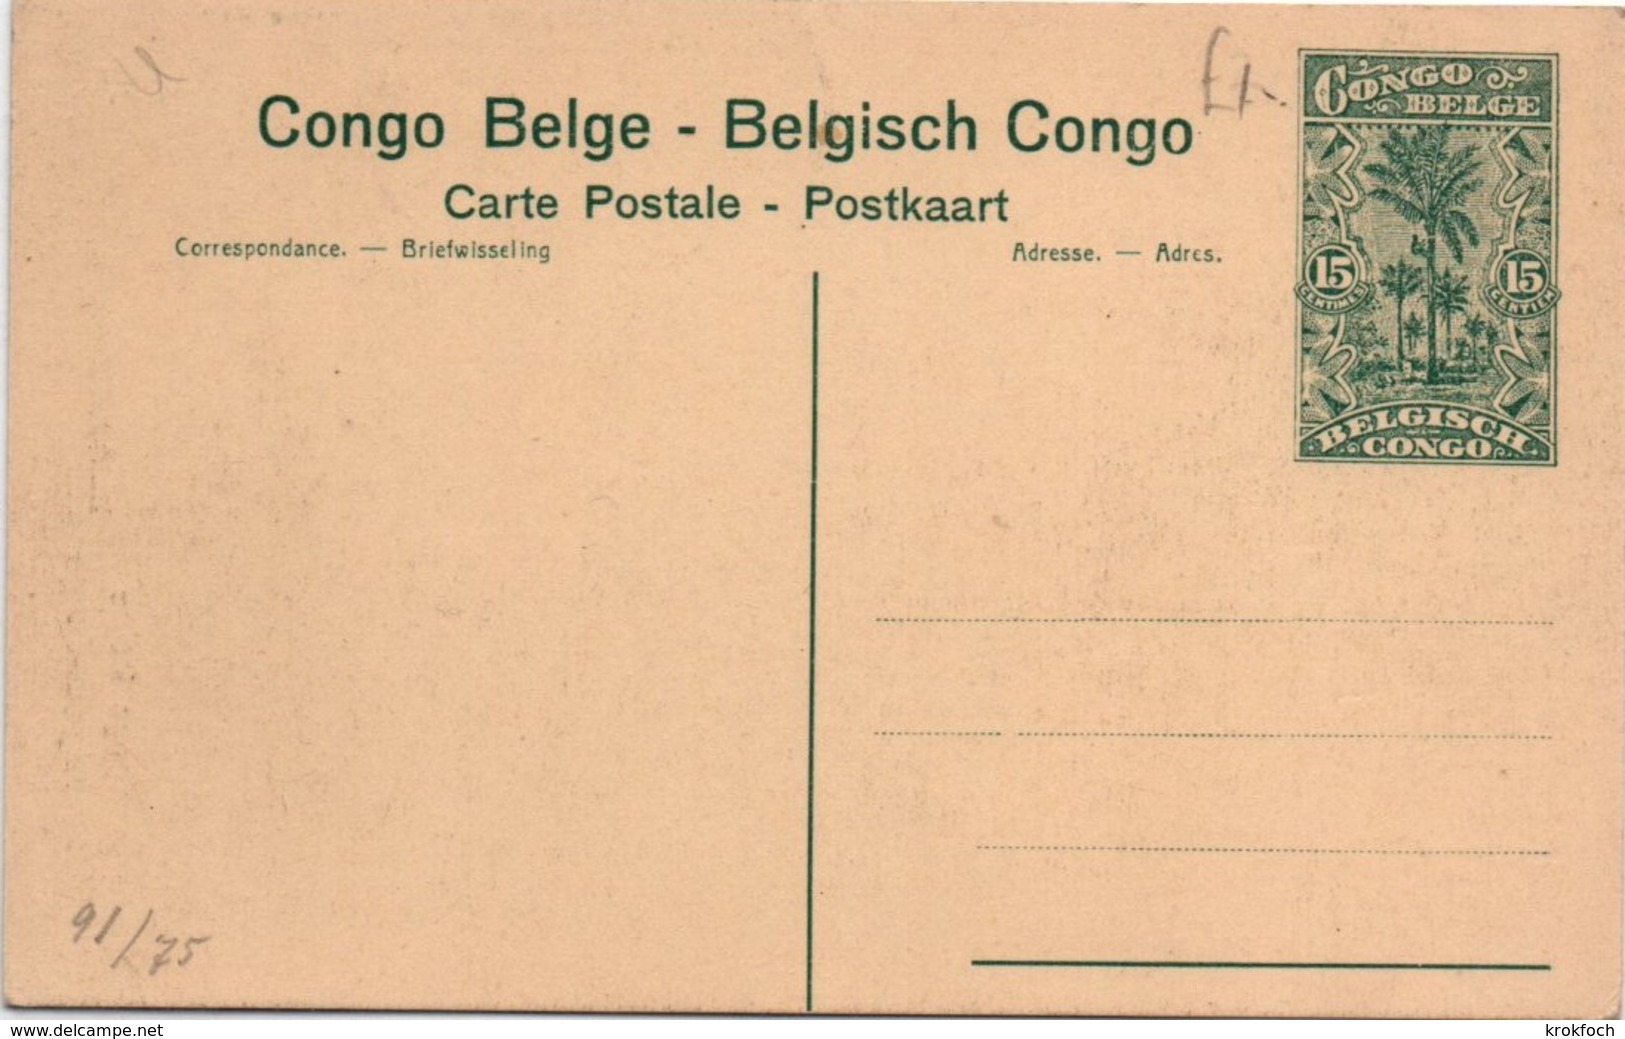 Elisabethville Observatoire N°75 - Carte Entier Palmier 15 Cts - Congo Belge - Stationery Ganzsache - Ganzsachen